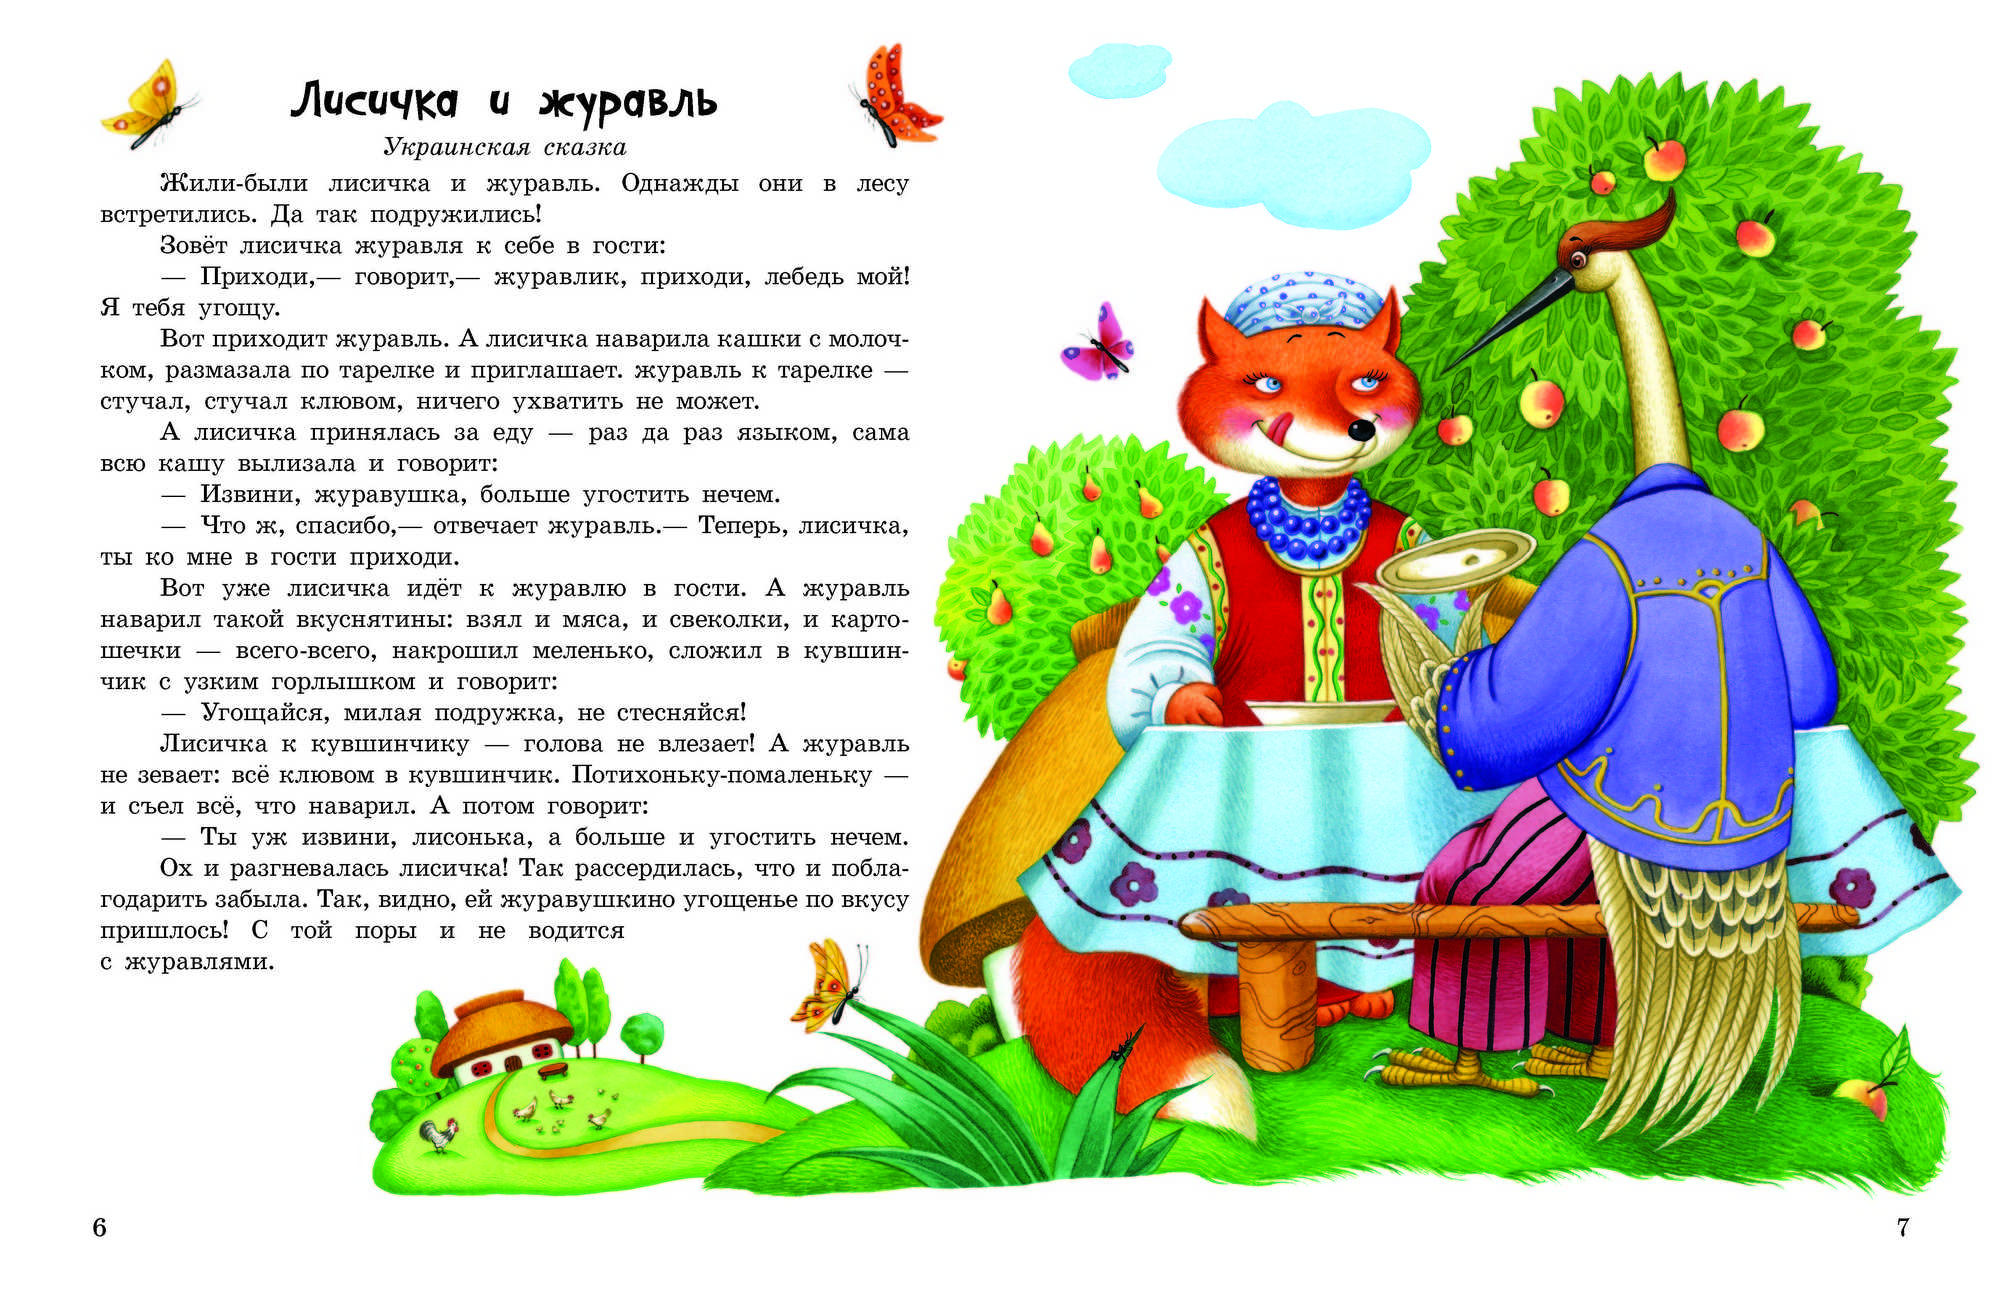 Читаем cказки для детей бесплатно онлайн